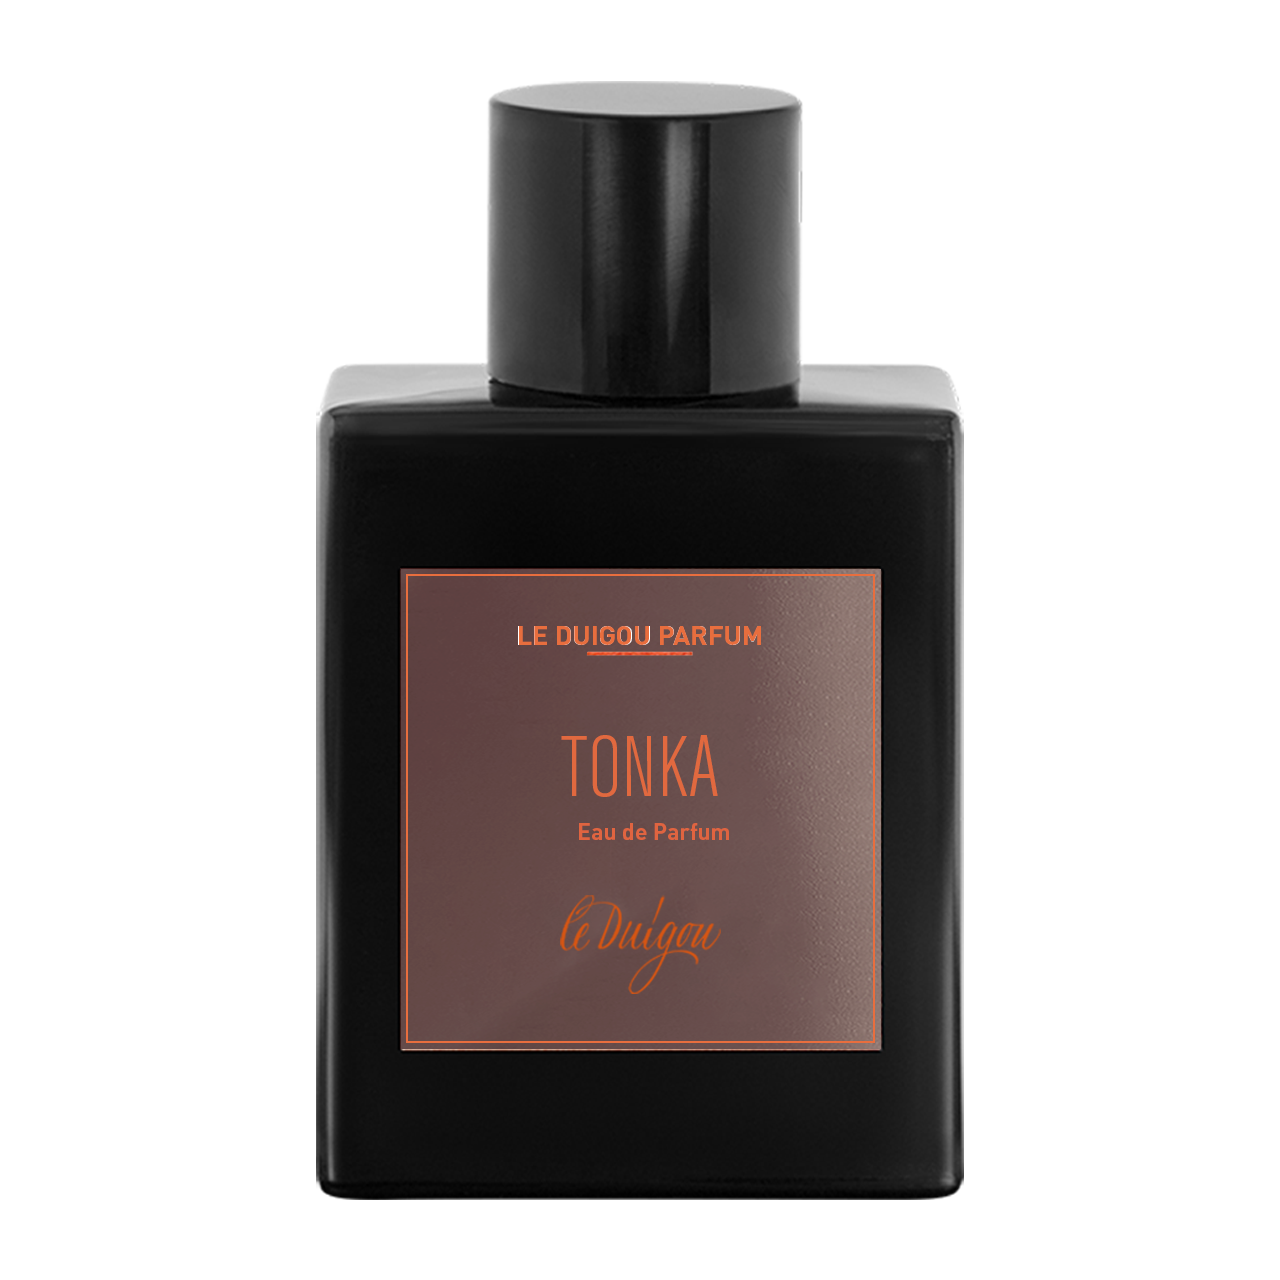 Perfume TONKA EdP 75ml